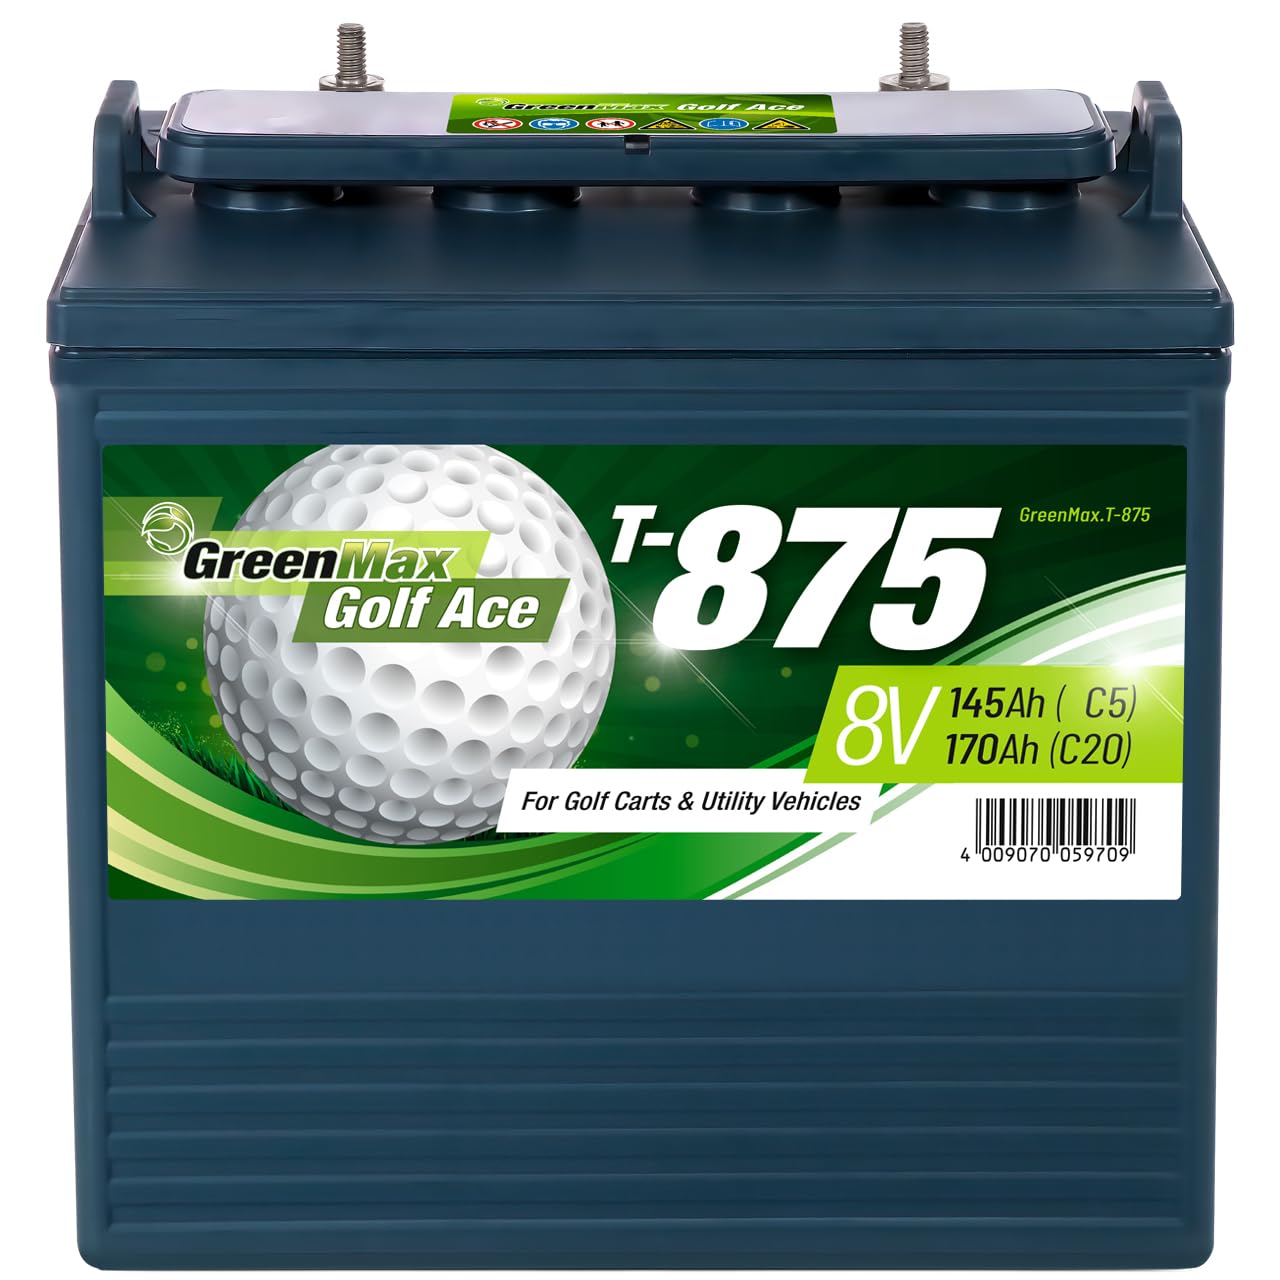 GreenMax Golf Ace T-875 (8V 170Ah) - Hochleistungs-Blei-Säure-Batterie für Golfcarts und Elektrofahrzeuge - Zuverlässig, Langlebig, Effizient, 99% Recycelbar von BIG